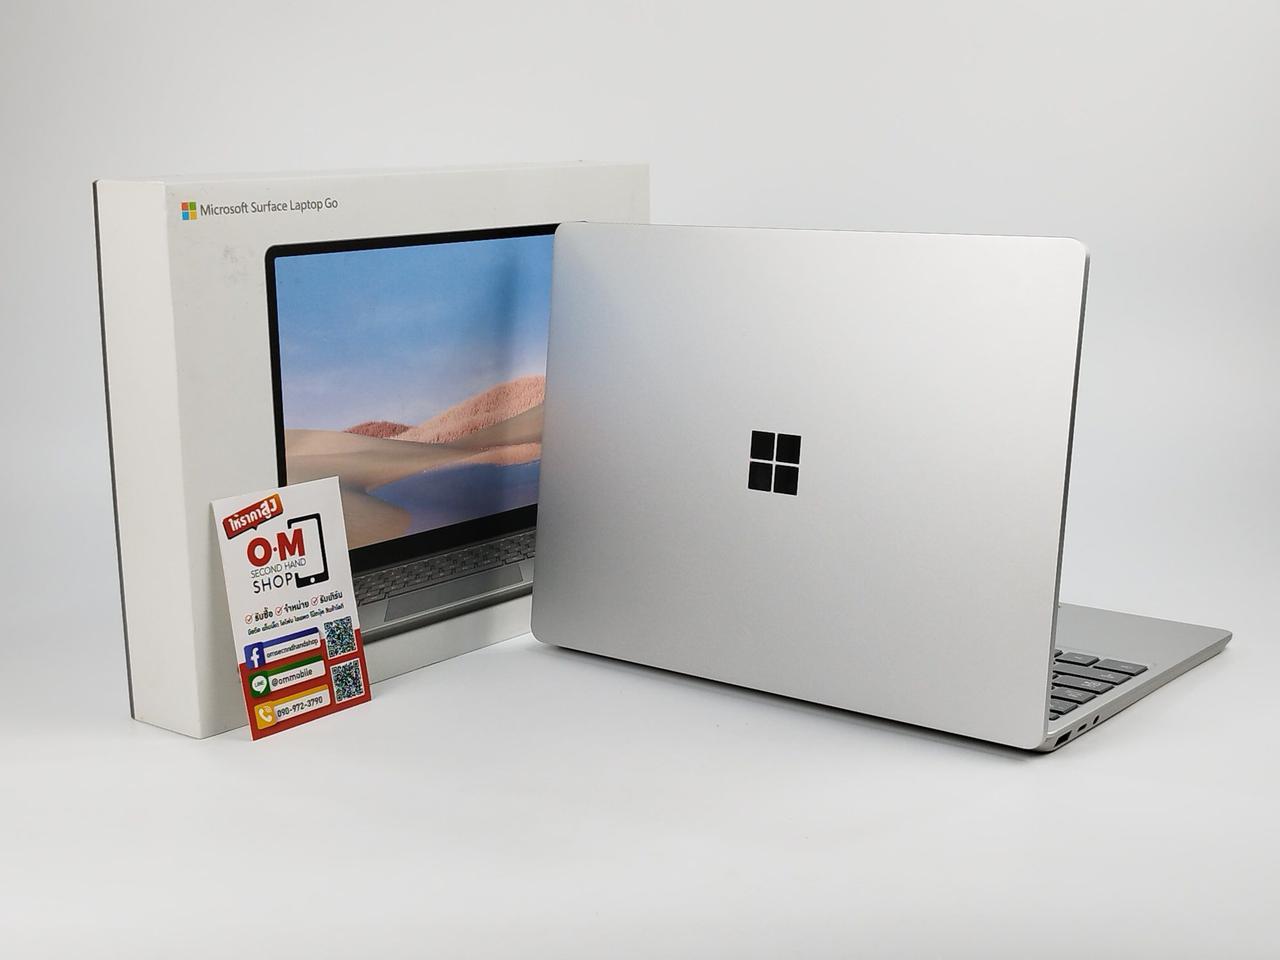 ขาย/แลก Microsoft Surface Laptop Go i5-1035G1 4/64 จอ Touchscreen ศูนย์ไทย สวยมาก ครบกล่อง เพียง 12,900 บาท 